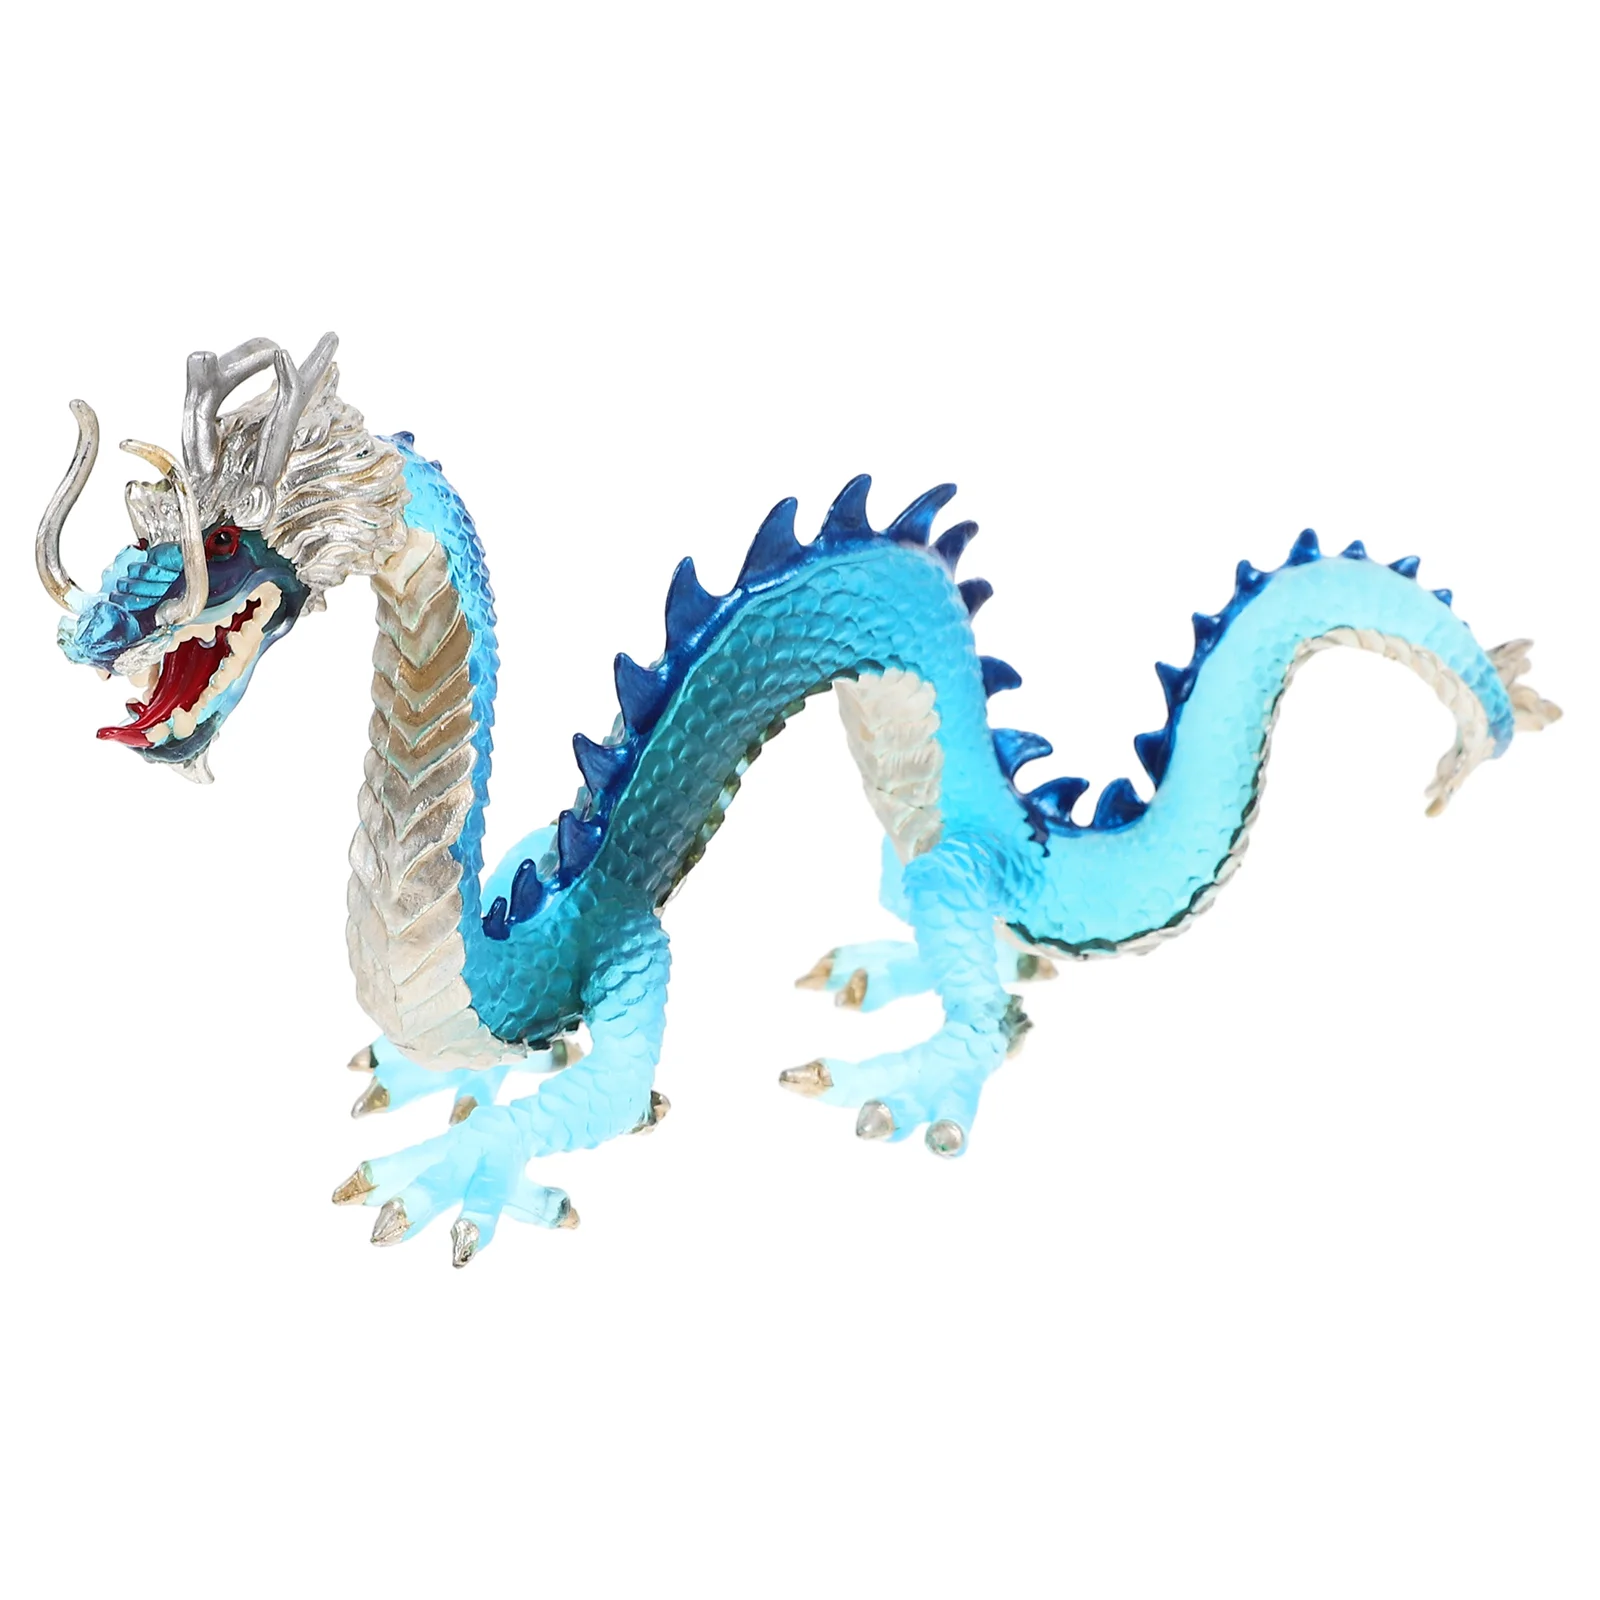 

Модель китайского дракона, орнамент, крафтовое украшение, имитация скульптуры, игрушки для детей, игрушки животных